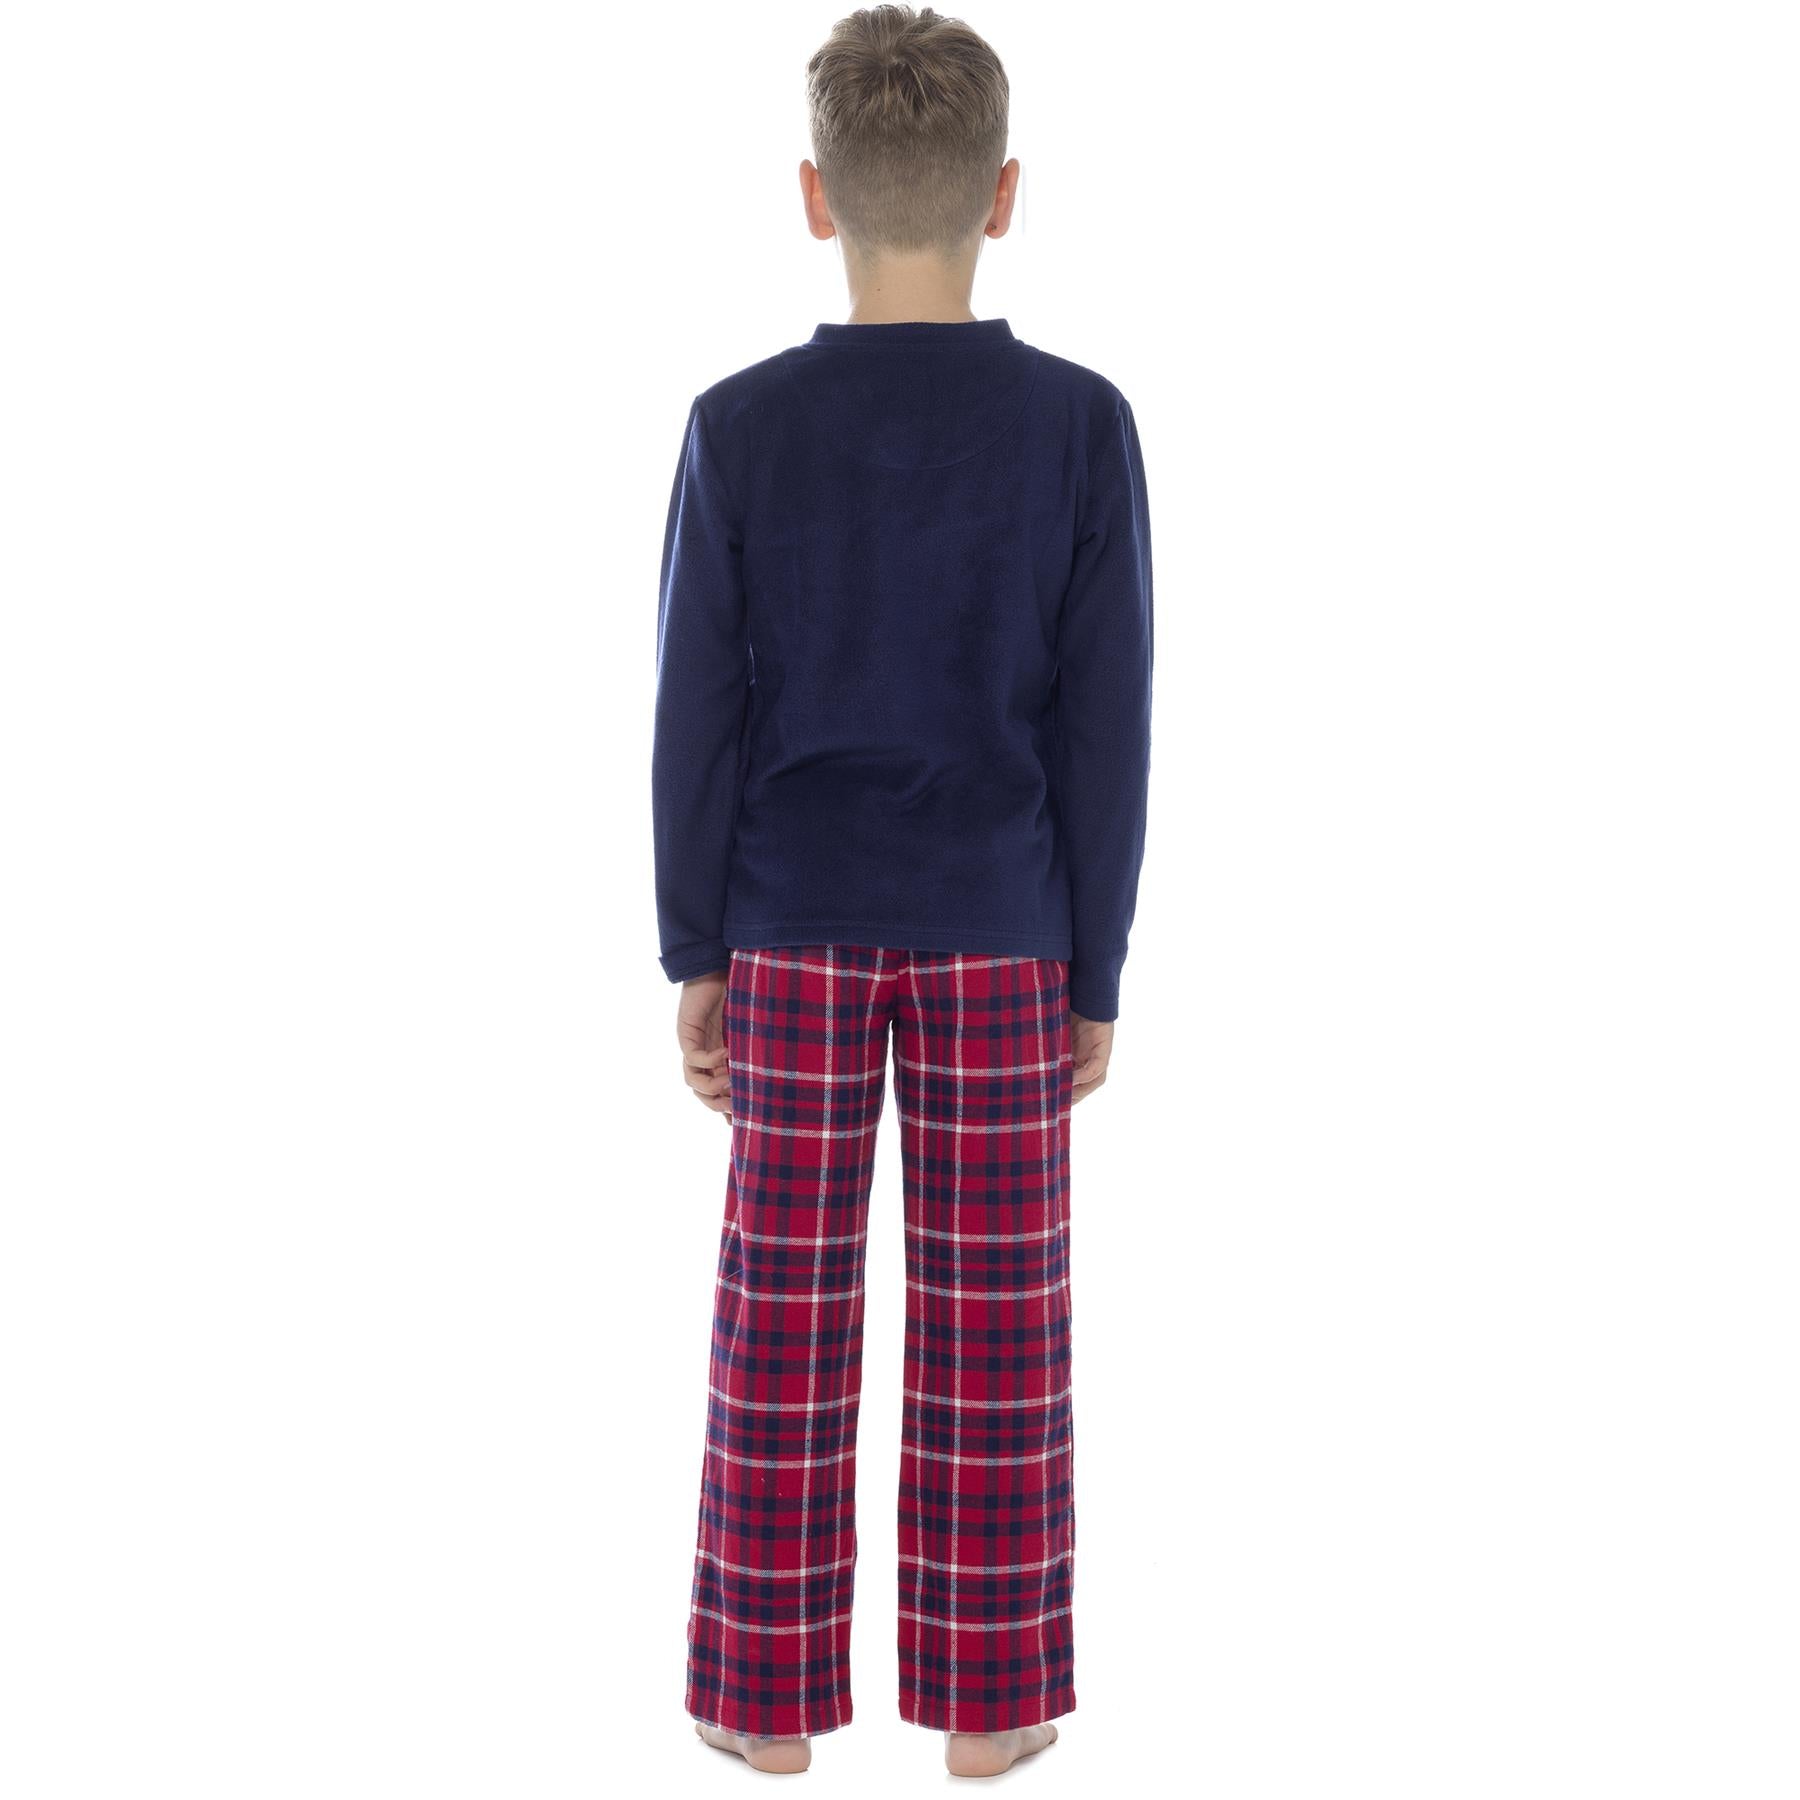 Boys Flannel Check Pants Grey Pyjamas